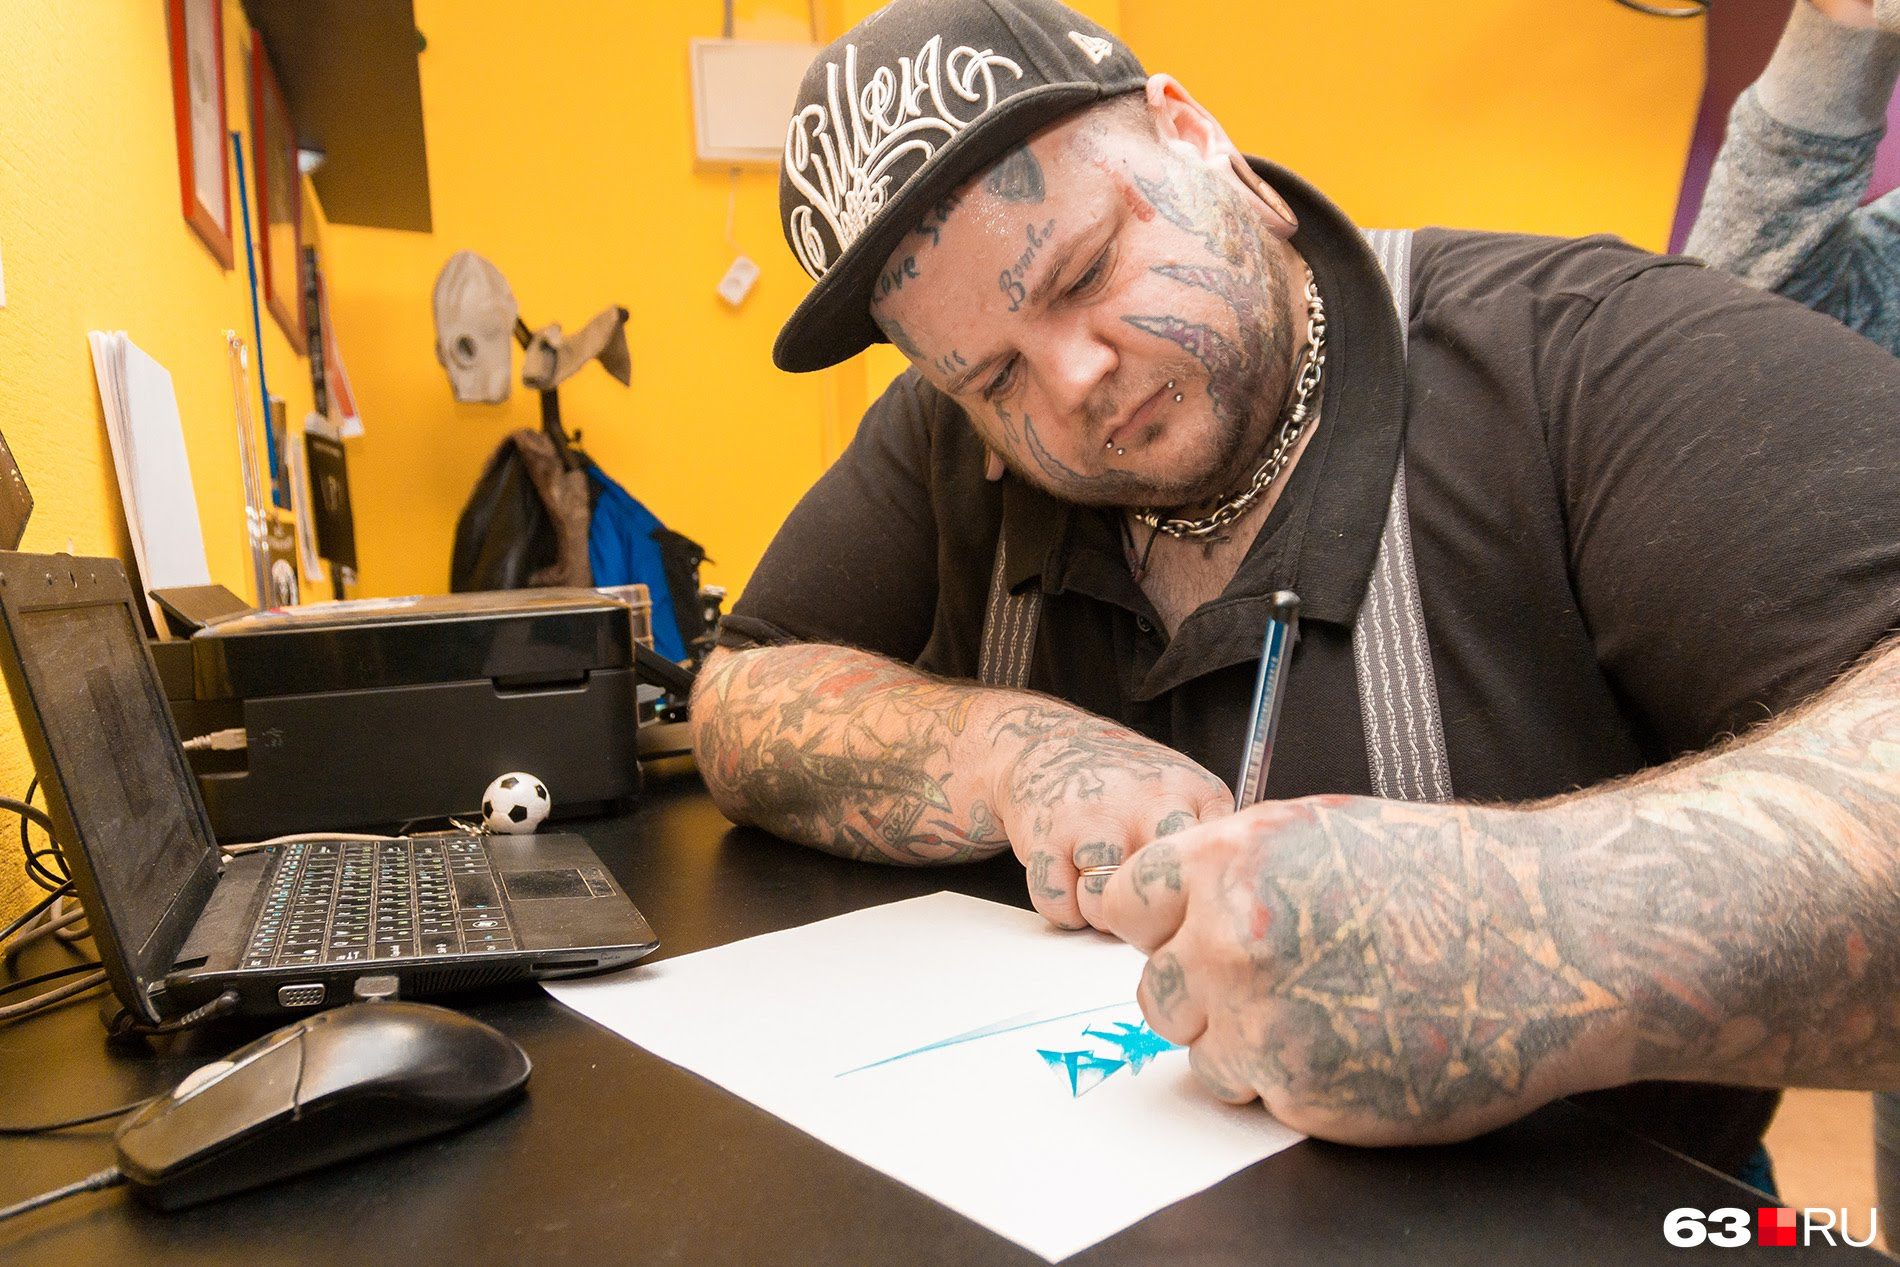 Татуировщик собственноручно рисует эскизы для своих клиентов